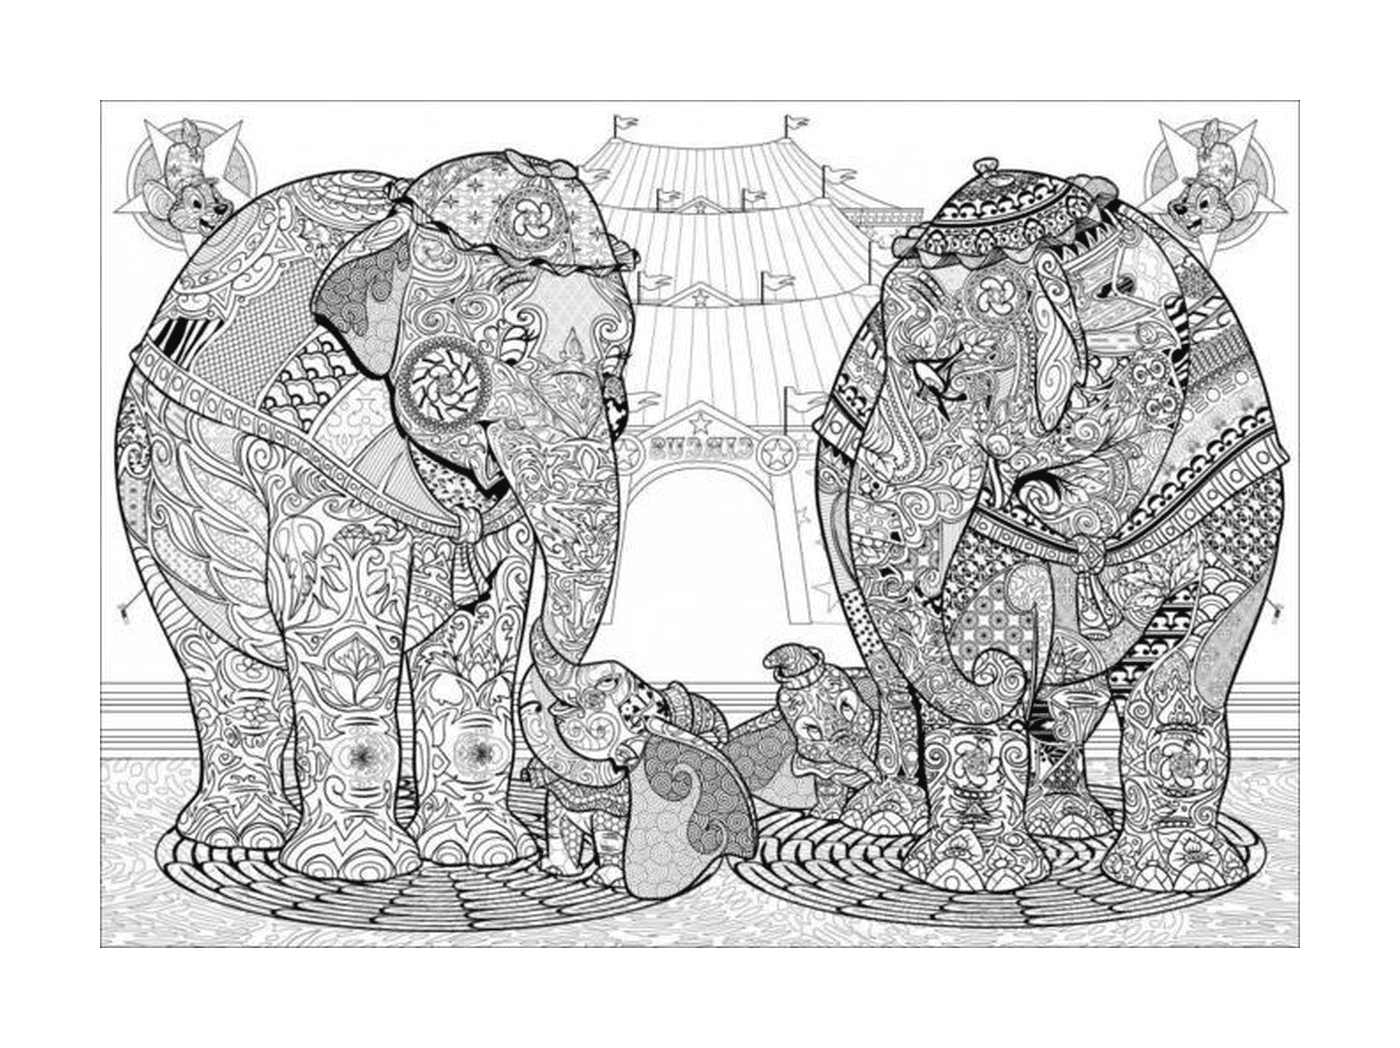  Elefanten, die Seite an Seite stehen 